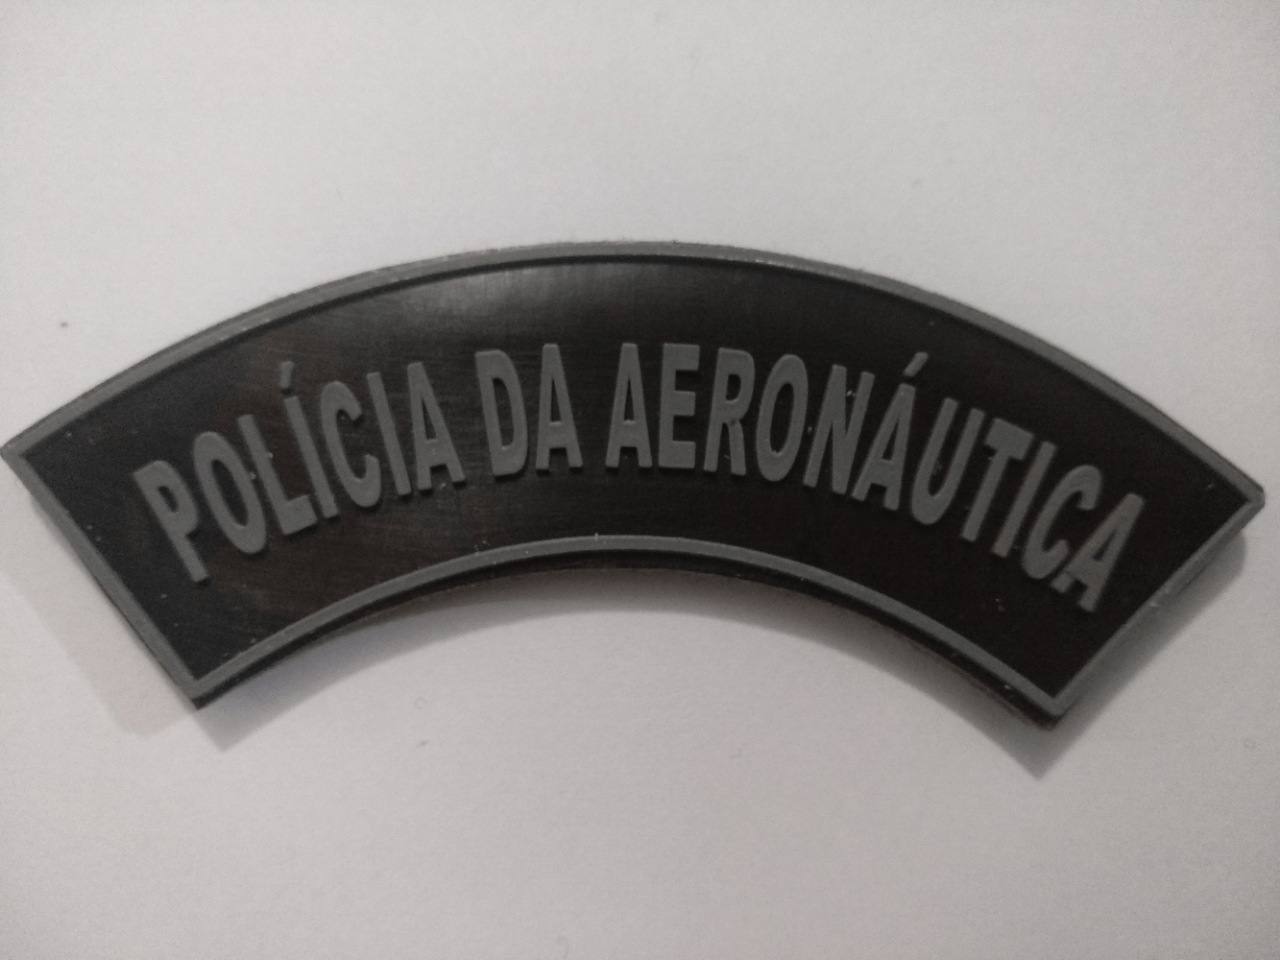 Manicaca Emborrachada da Polícia da Aeronáutica